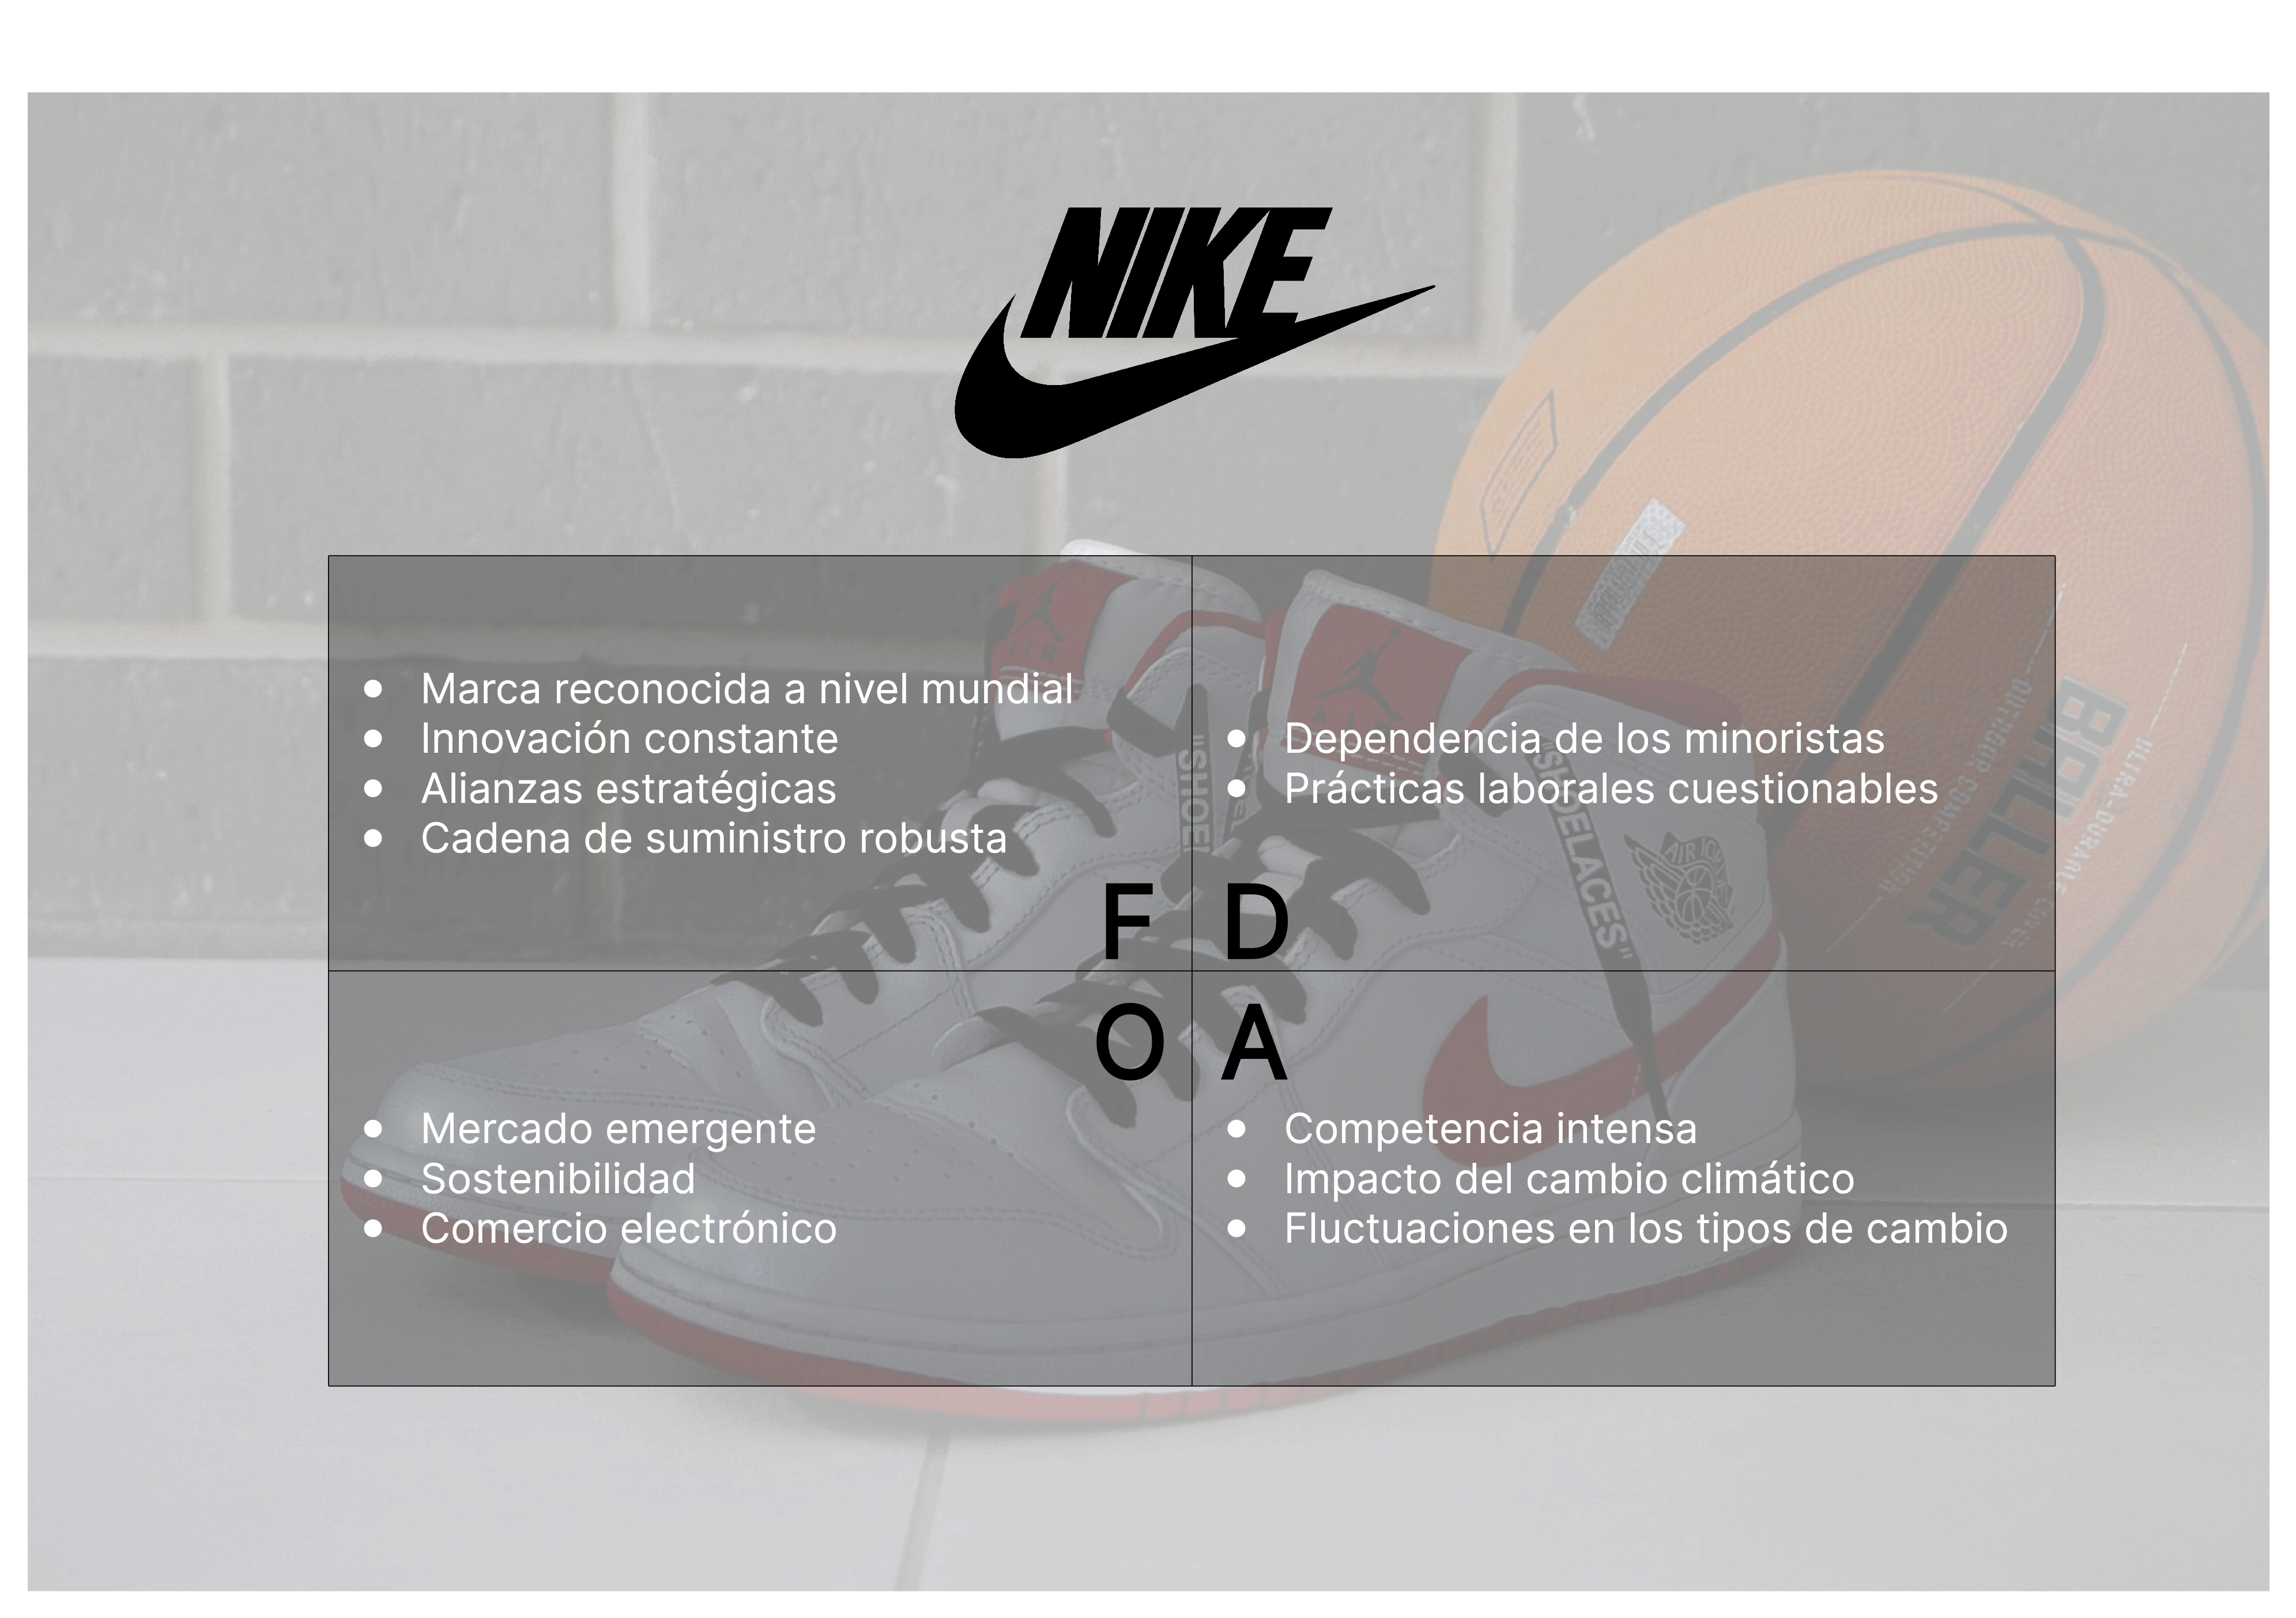 Análisis FODA de Nike